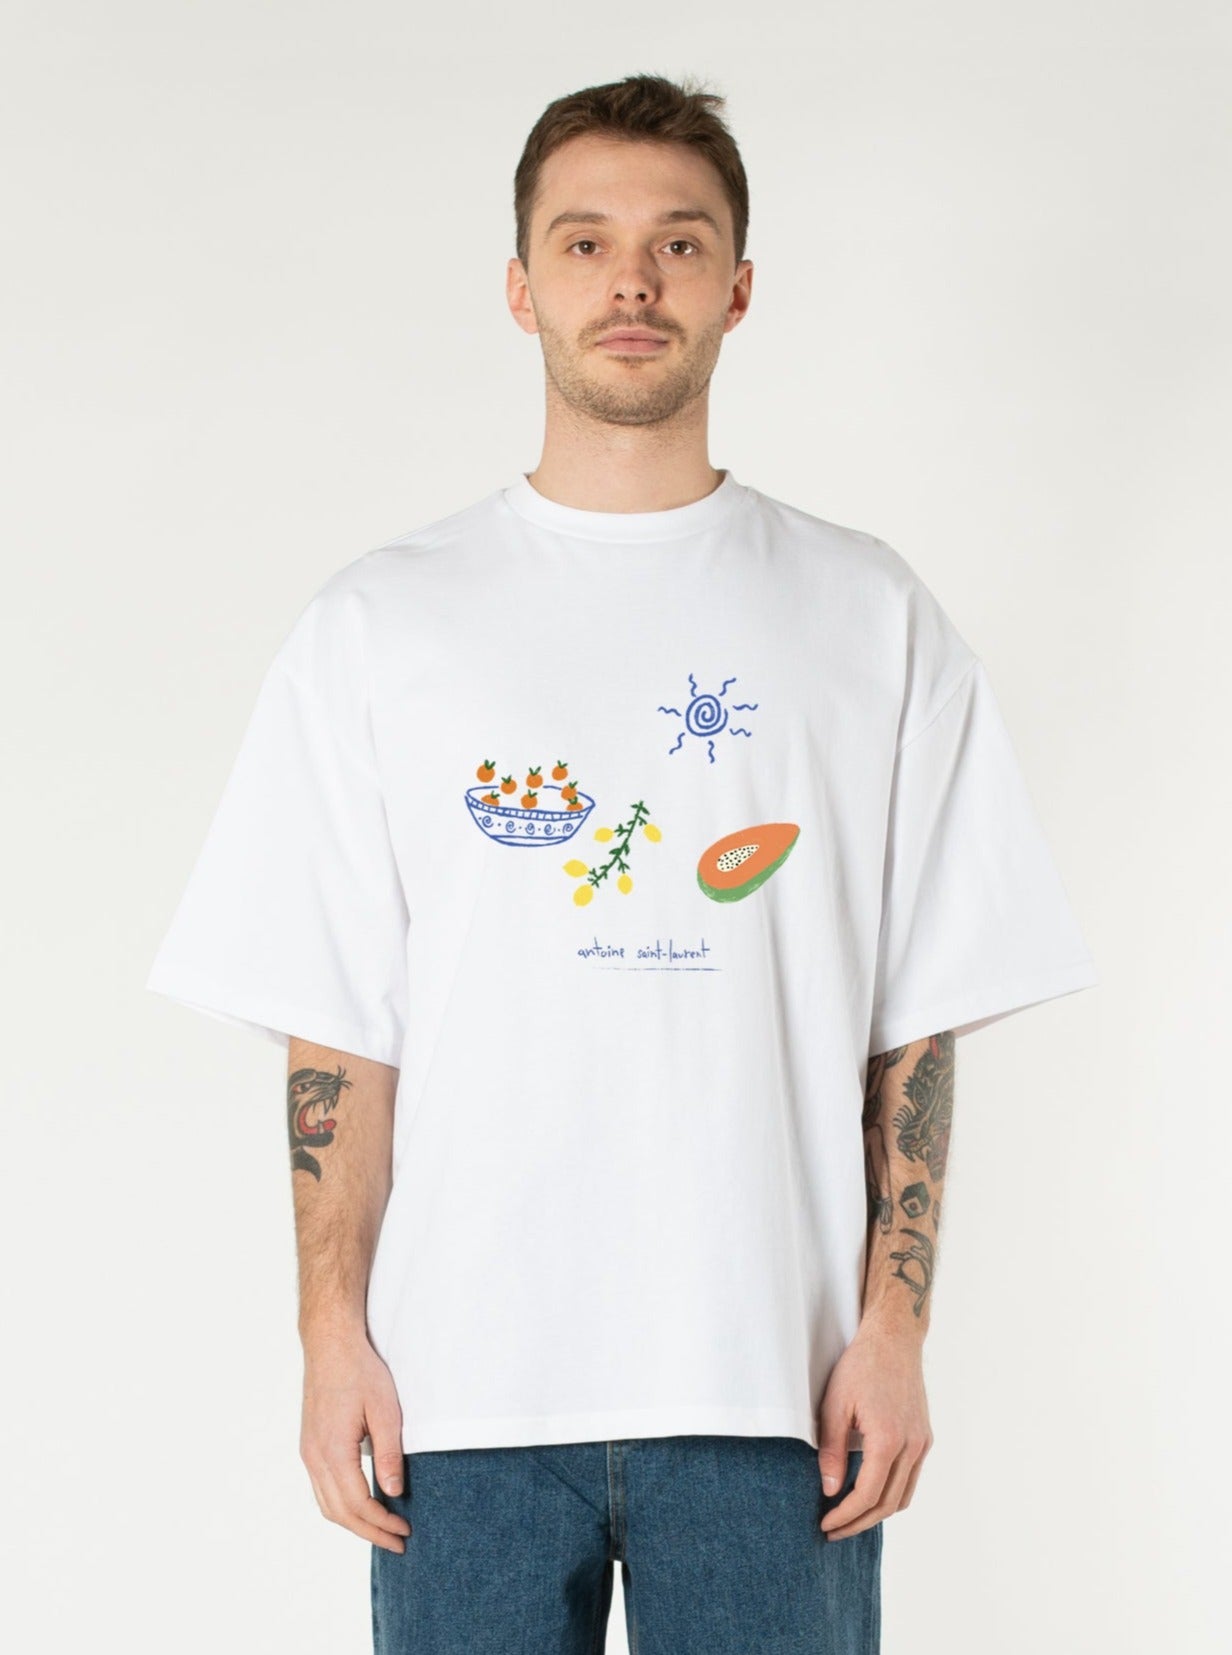 T-shirt "La Récolte" par Antoine St-Laurent